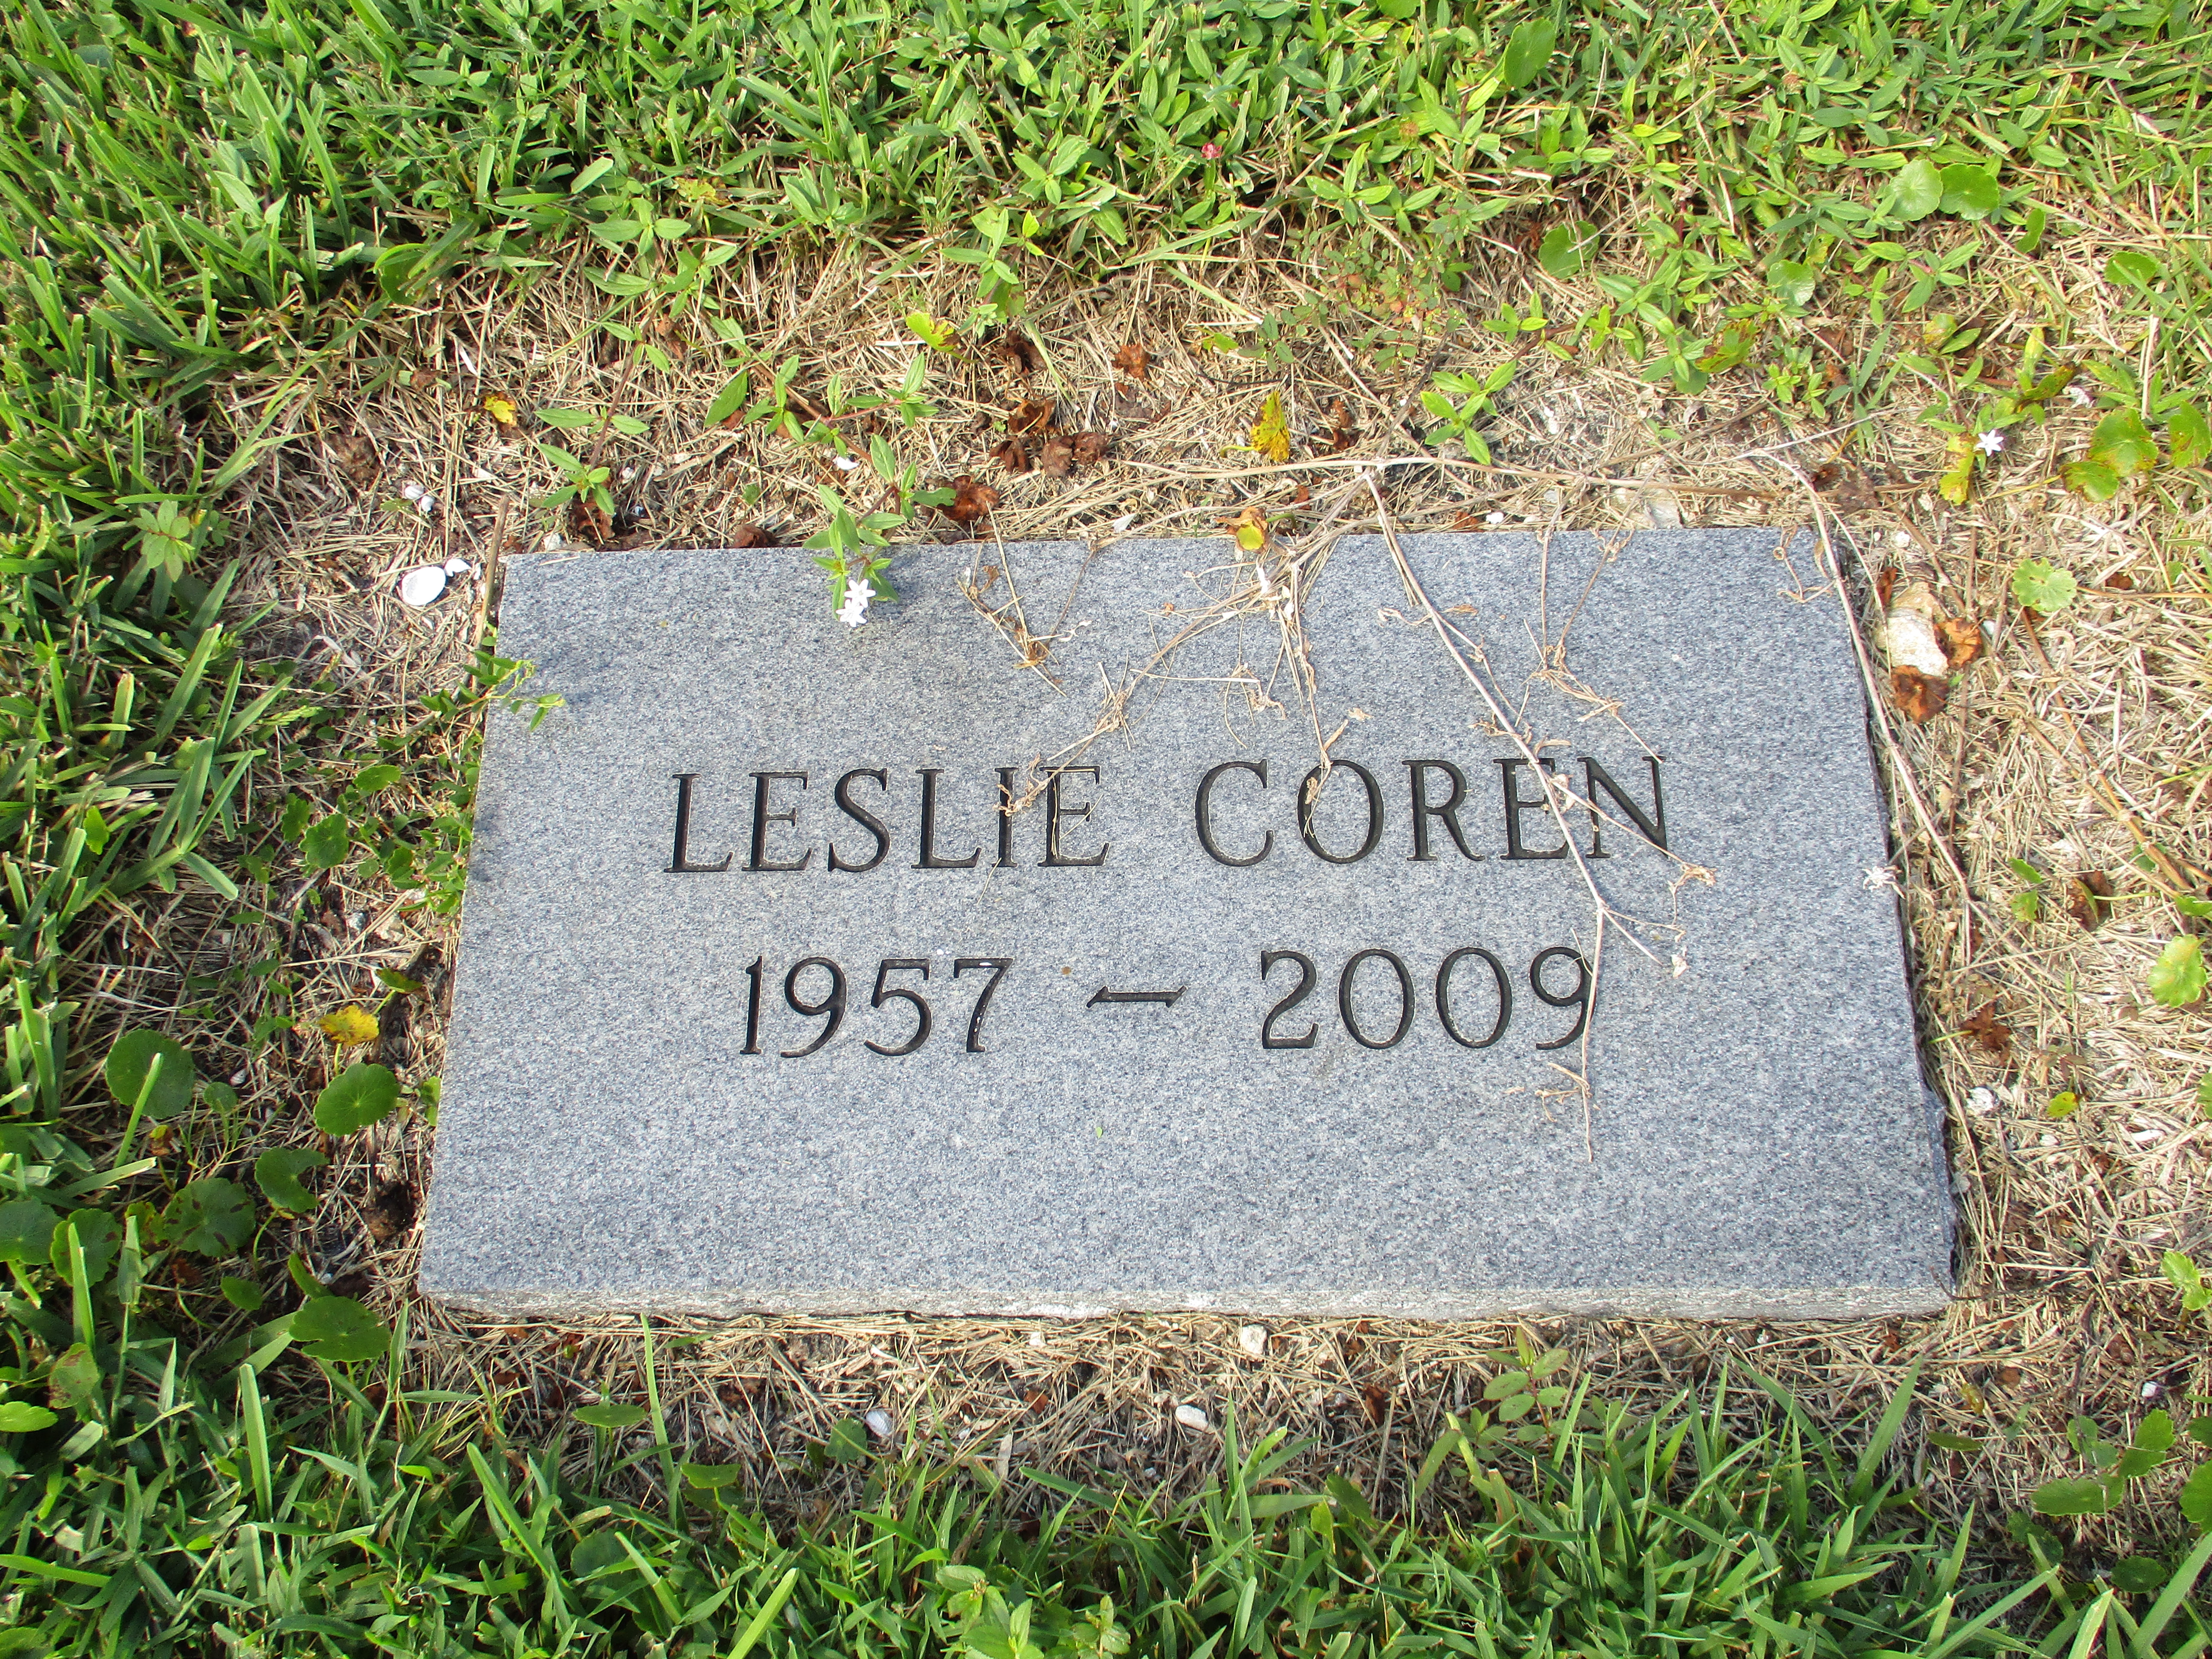 Leslie Coren